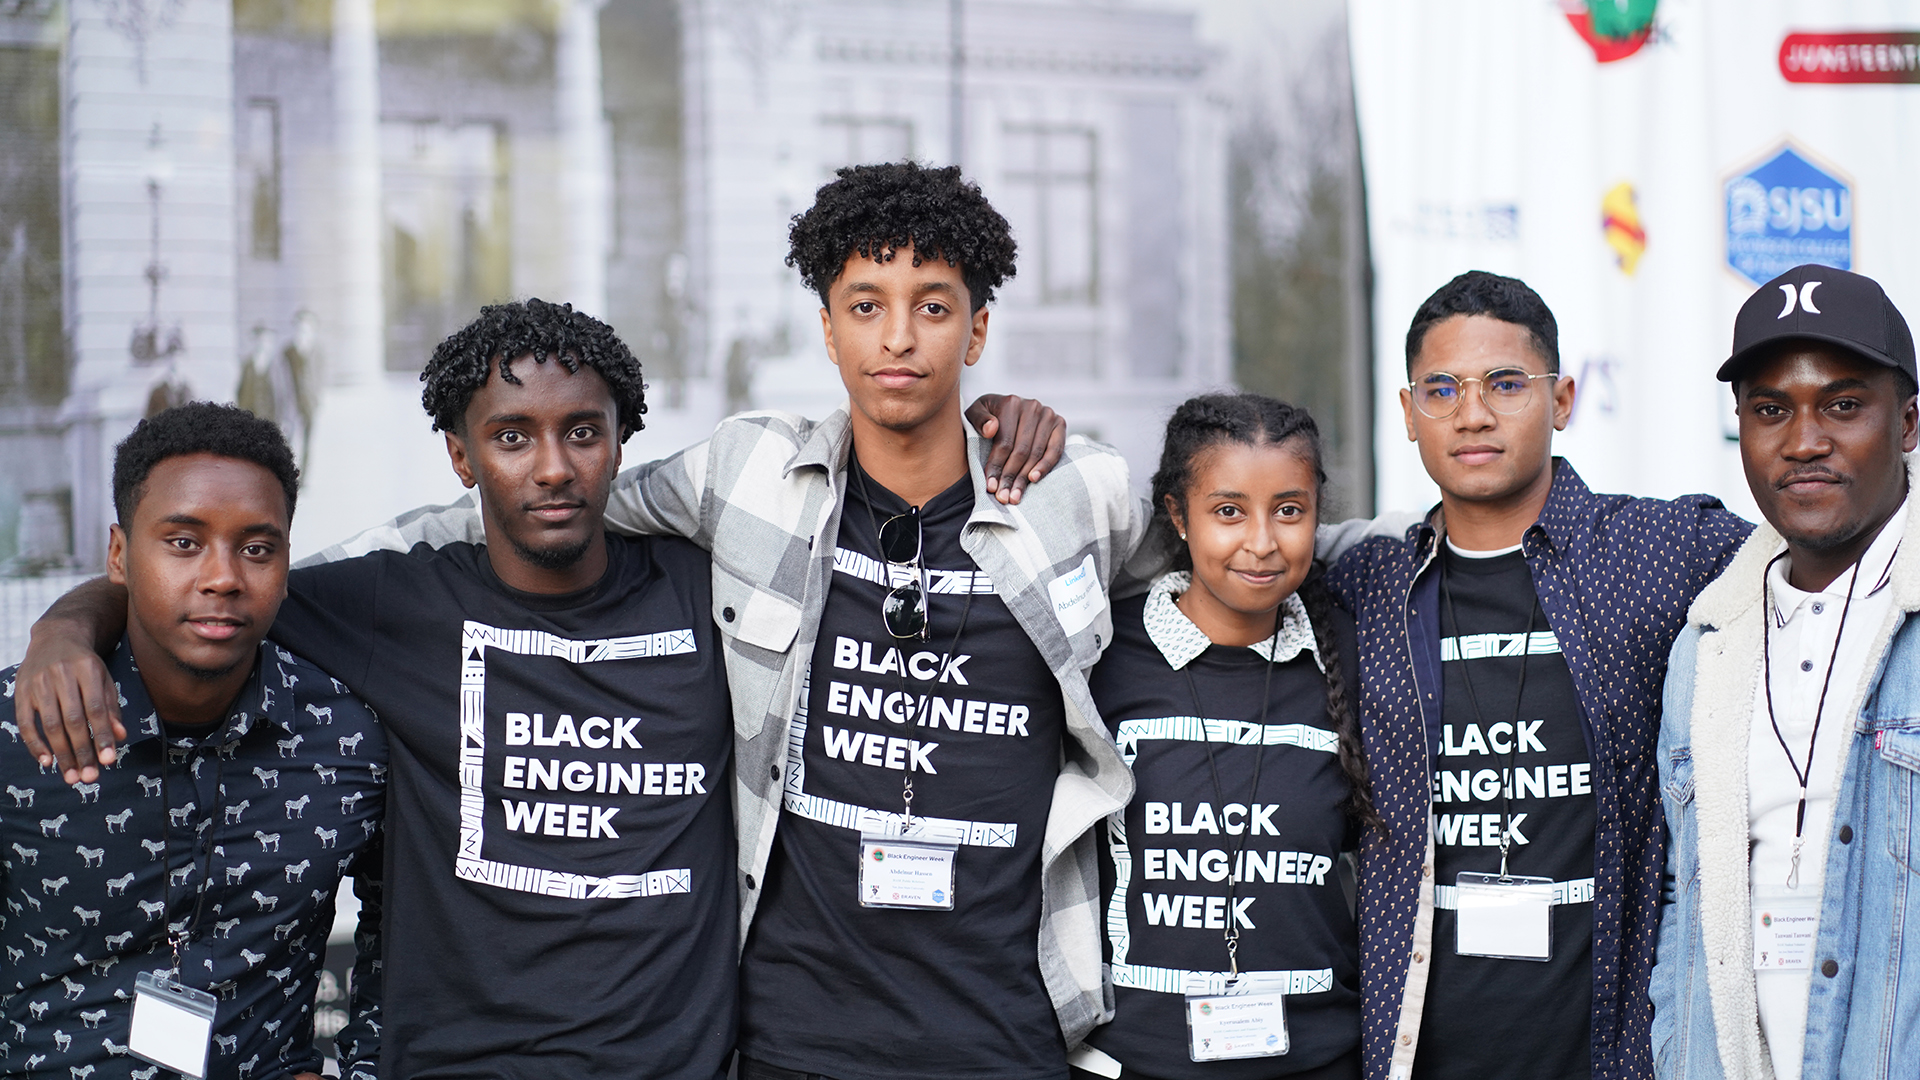 Students at Black Engineer Week